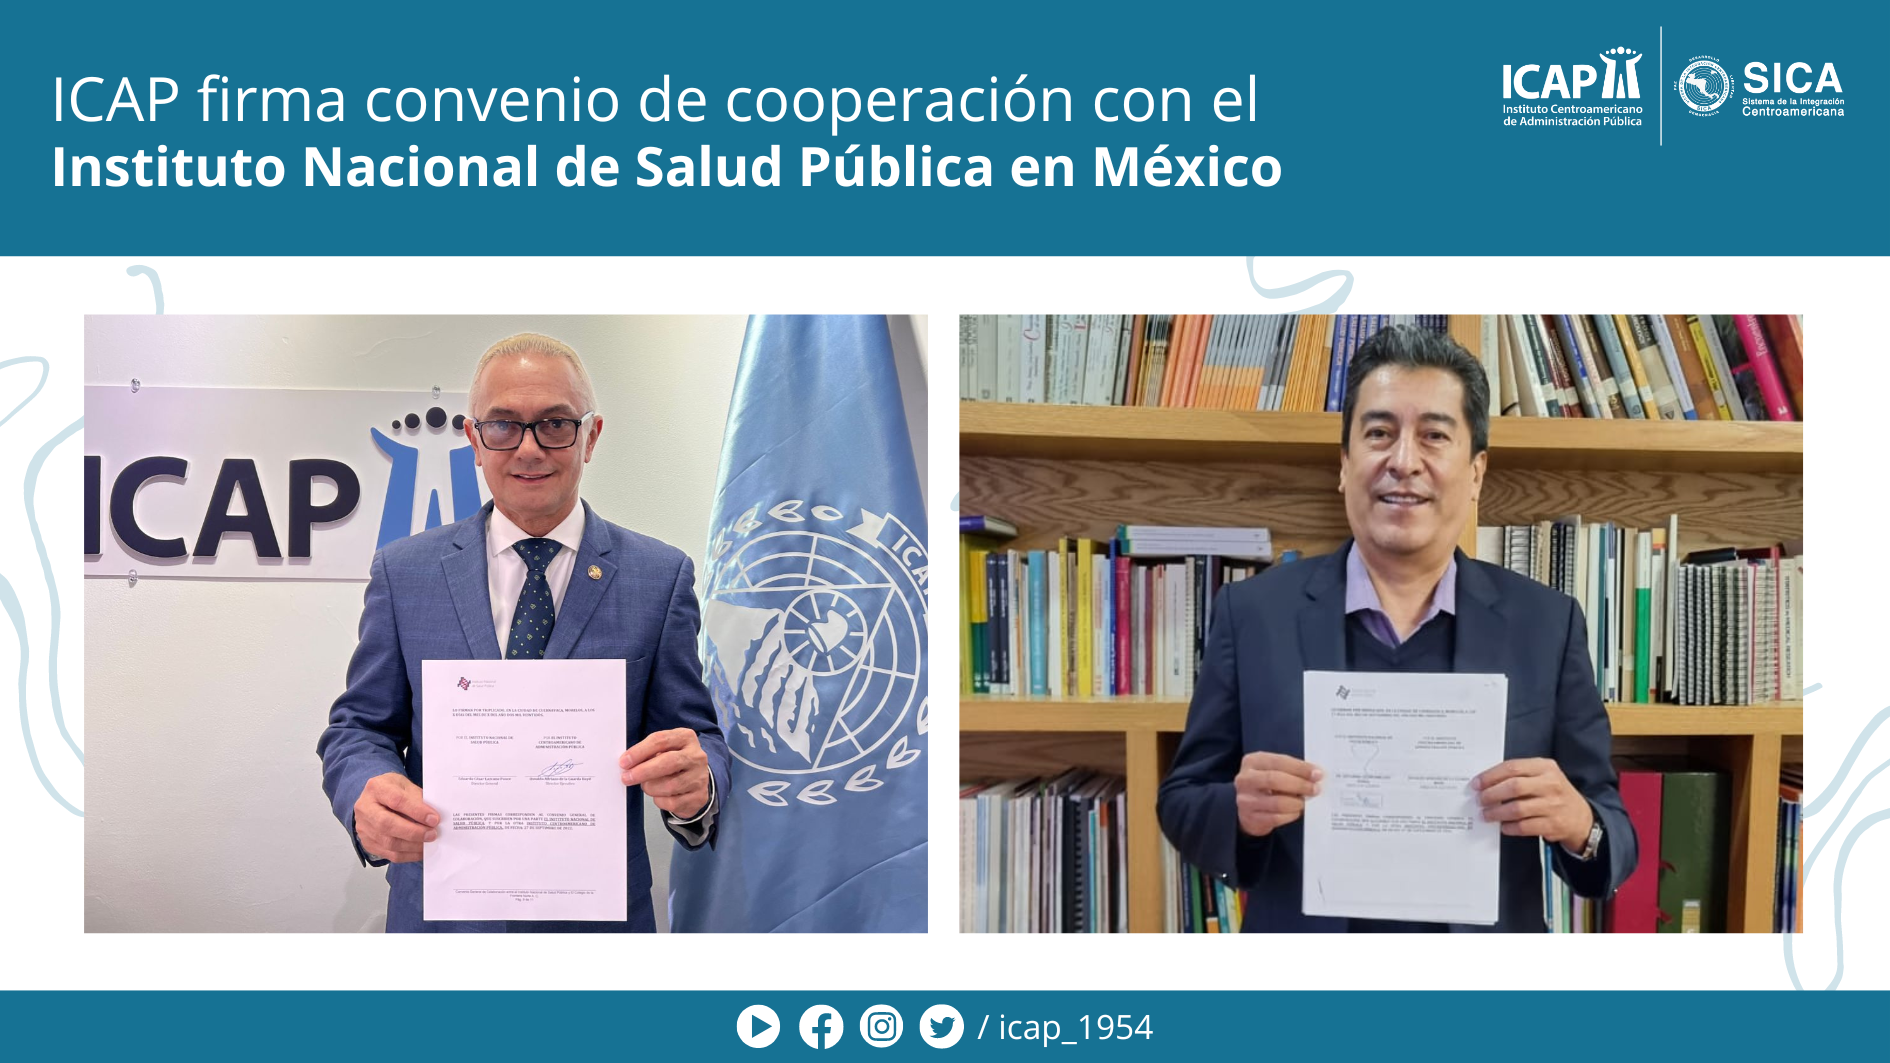 ICAP firma convenio de cooperación con el Instituto Nacional de Salud Pública en México